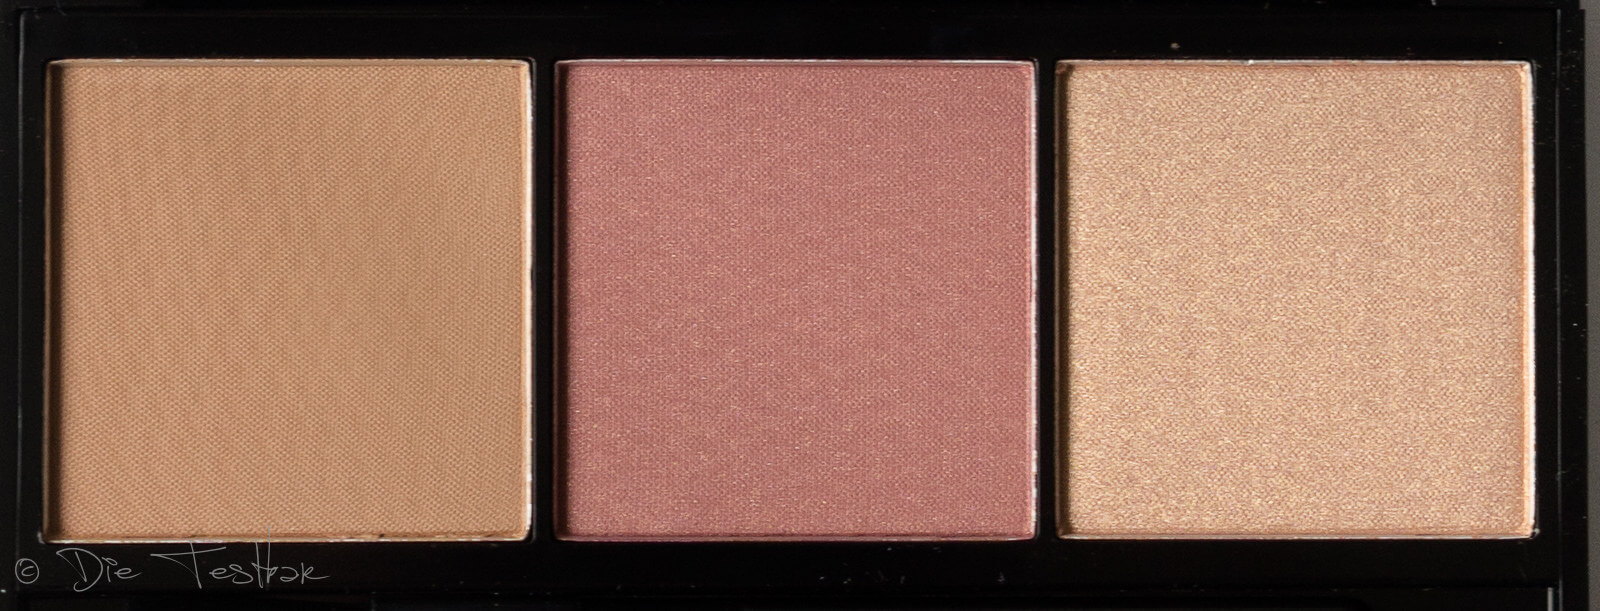 Face-, Bronze-, Blush- und Glow Paletten von Artdeco 19